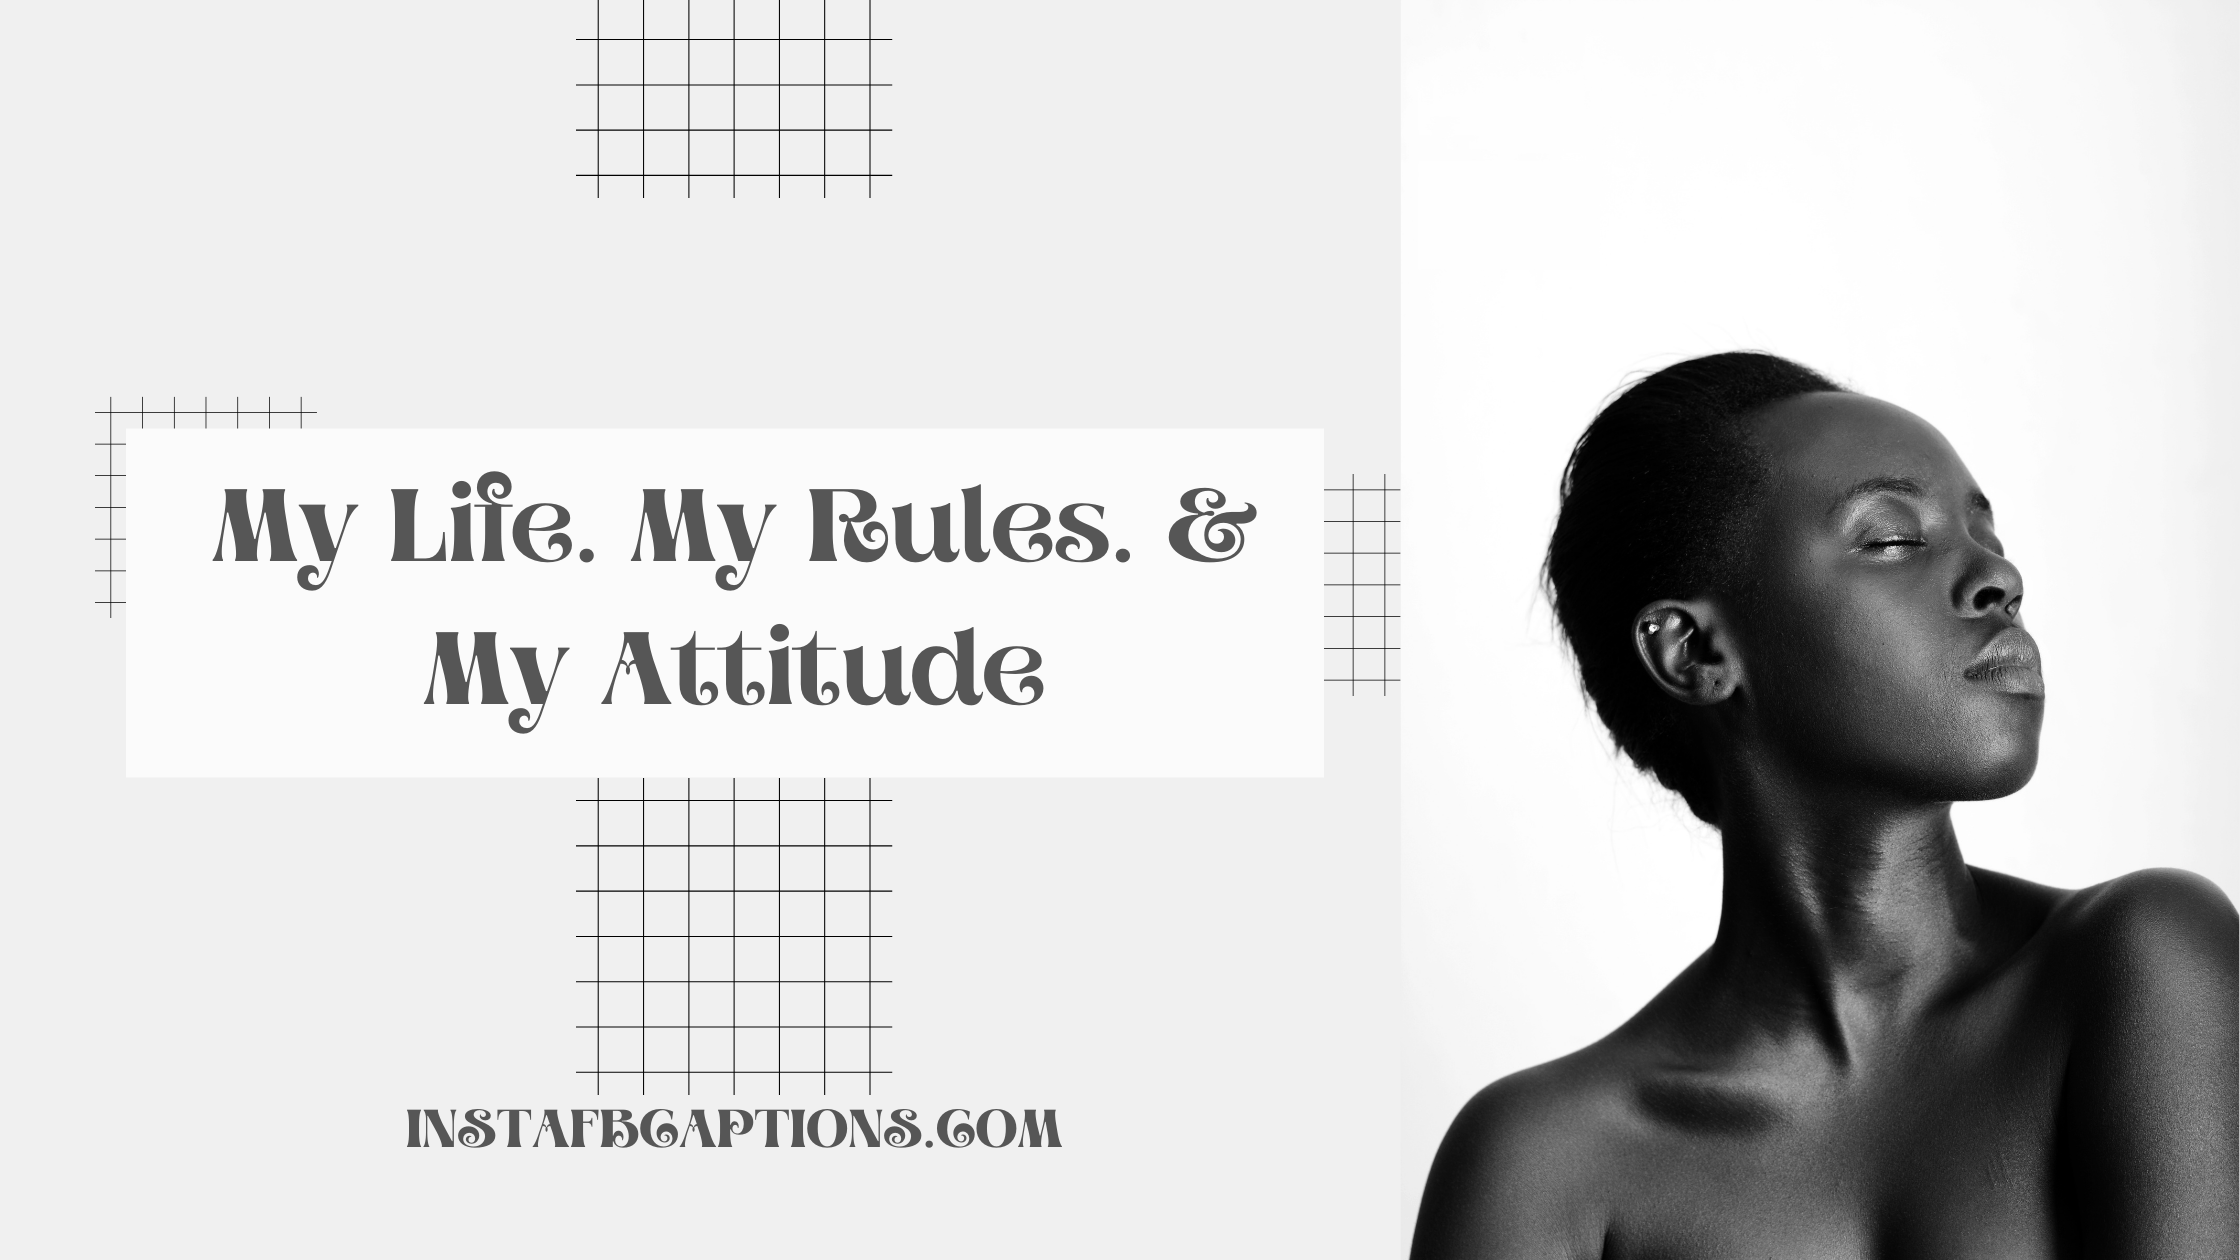 My Life. My Rules. & My Attitude attitude captions for instagram - Attitude captions for girls - 150+ Best Attitude Captions For Instagram in 2022